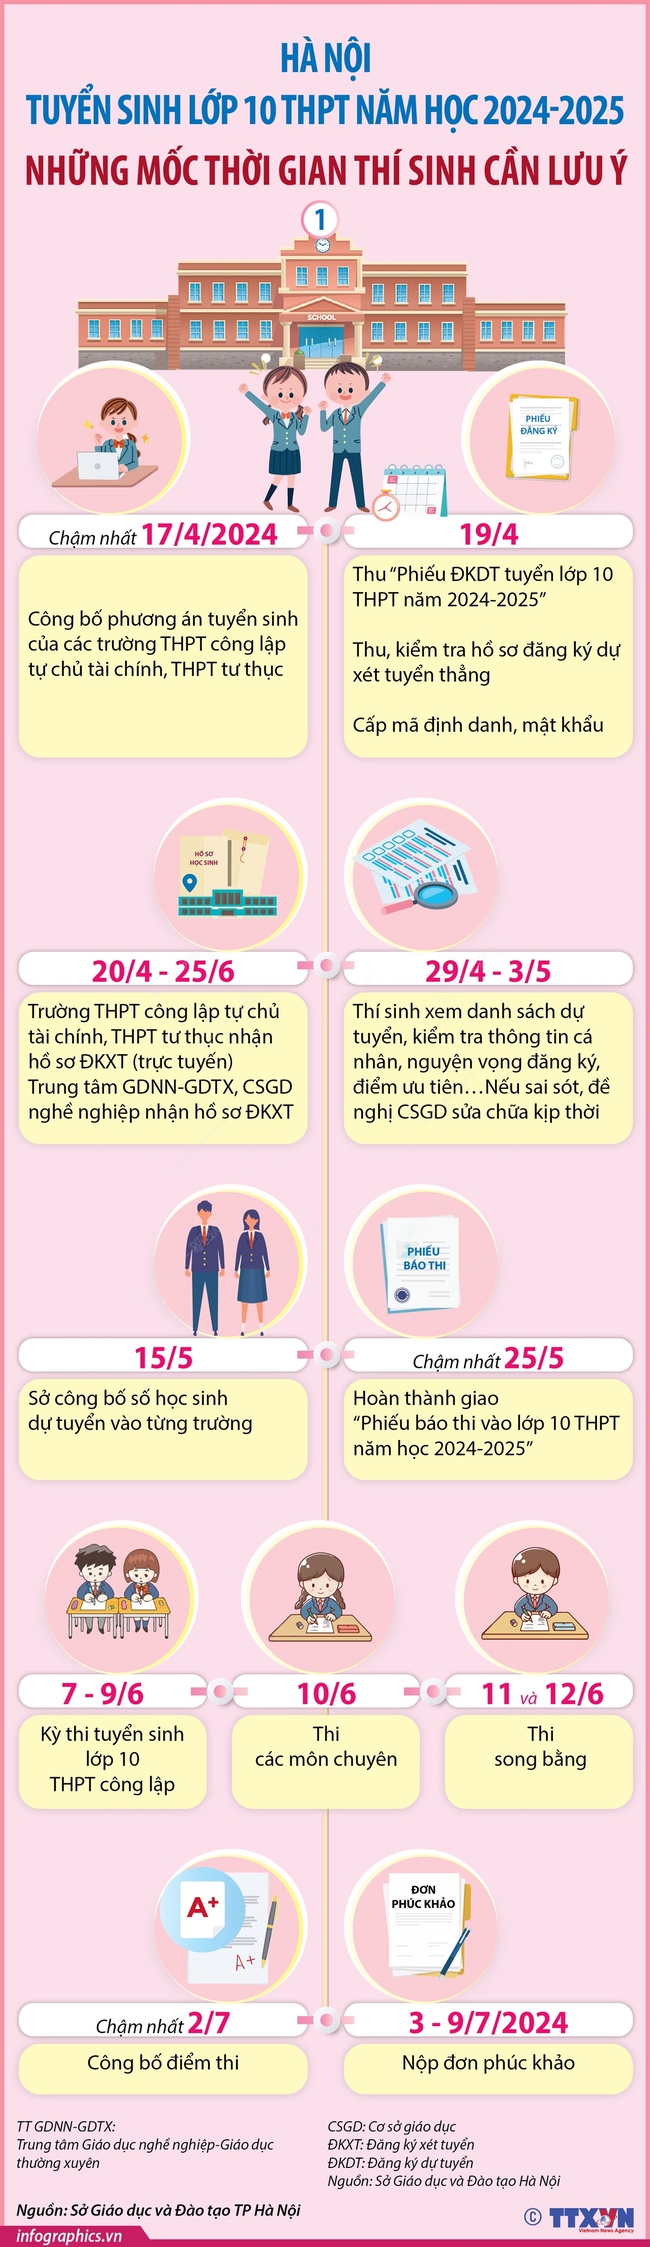 Hà Nội - Tuyển sinh lớp 10 THPT năm học 2024-2025: Những mốc thời gian thí sinh cần lưu ý (bài 1) - Ảnh 1.